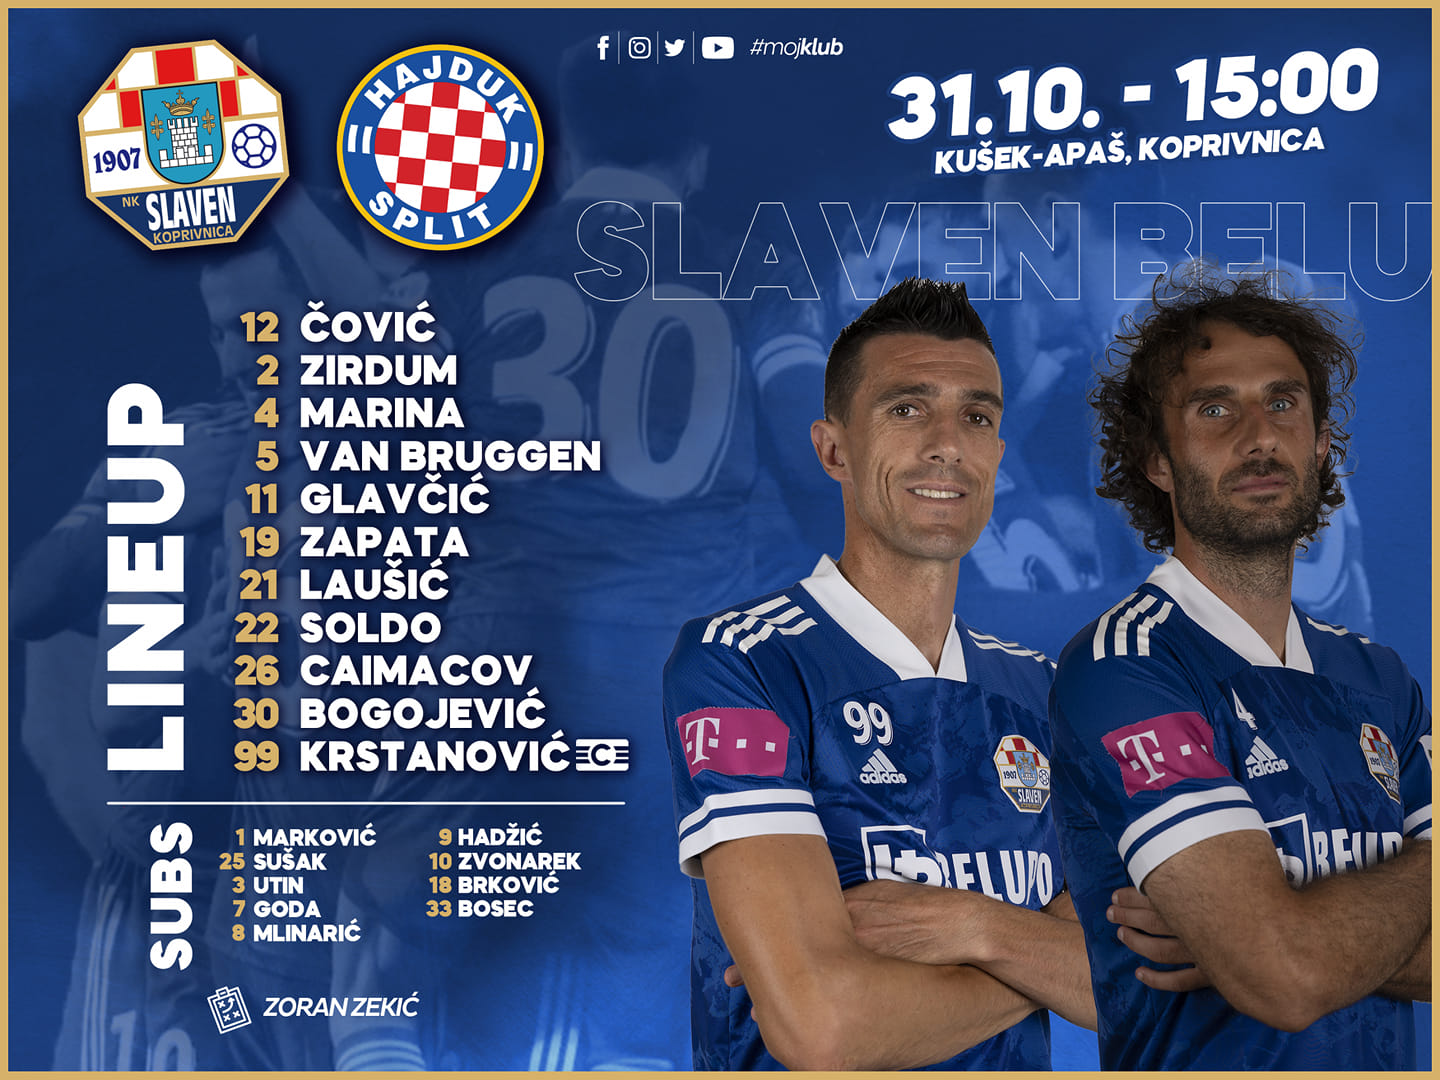 Prva Hrvatska Liga - Početne postave za susret NK Osijek - HNK Hajduk Split  (15:00)